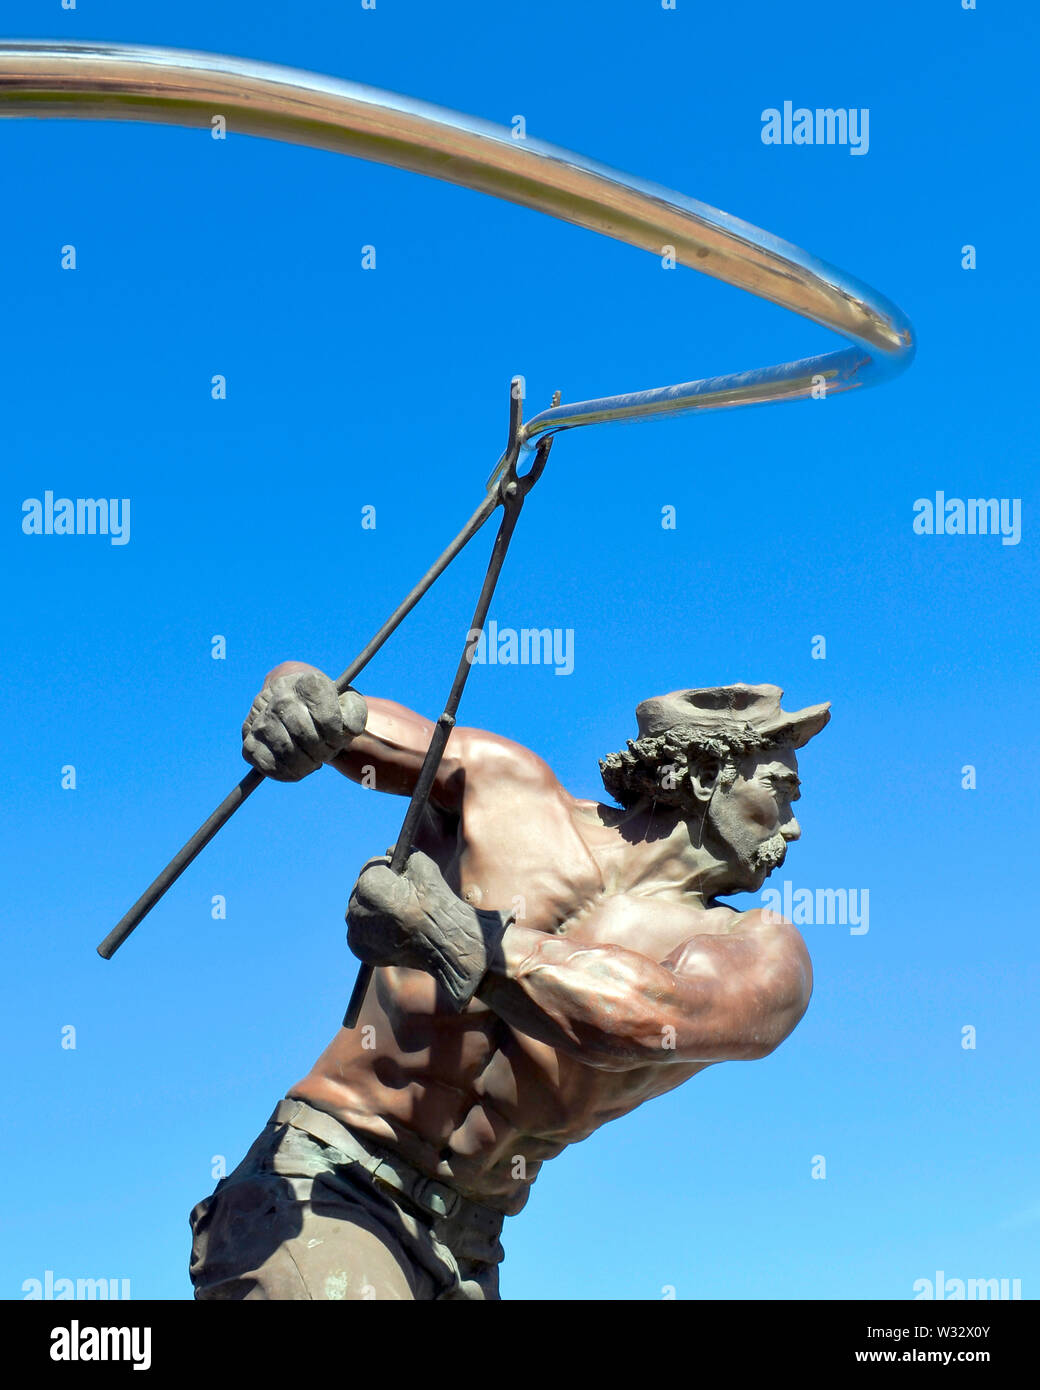 Statua di bronzo di uomo muscoloso formando un tondino di acciaio negli Stati Uniti/acciaio POSCO, Pittsburg, CA, Stati Uniti d'America, Corea del Sud, statua dello scultore Frank Vitale,1993 Foto Stock